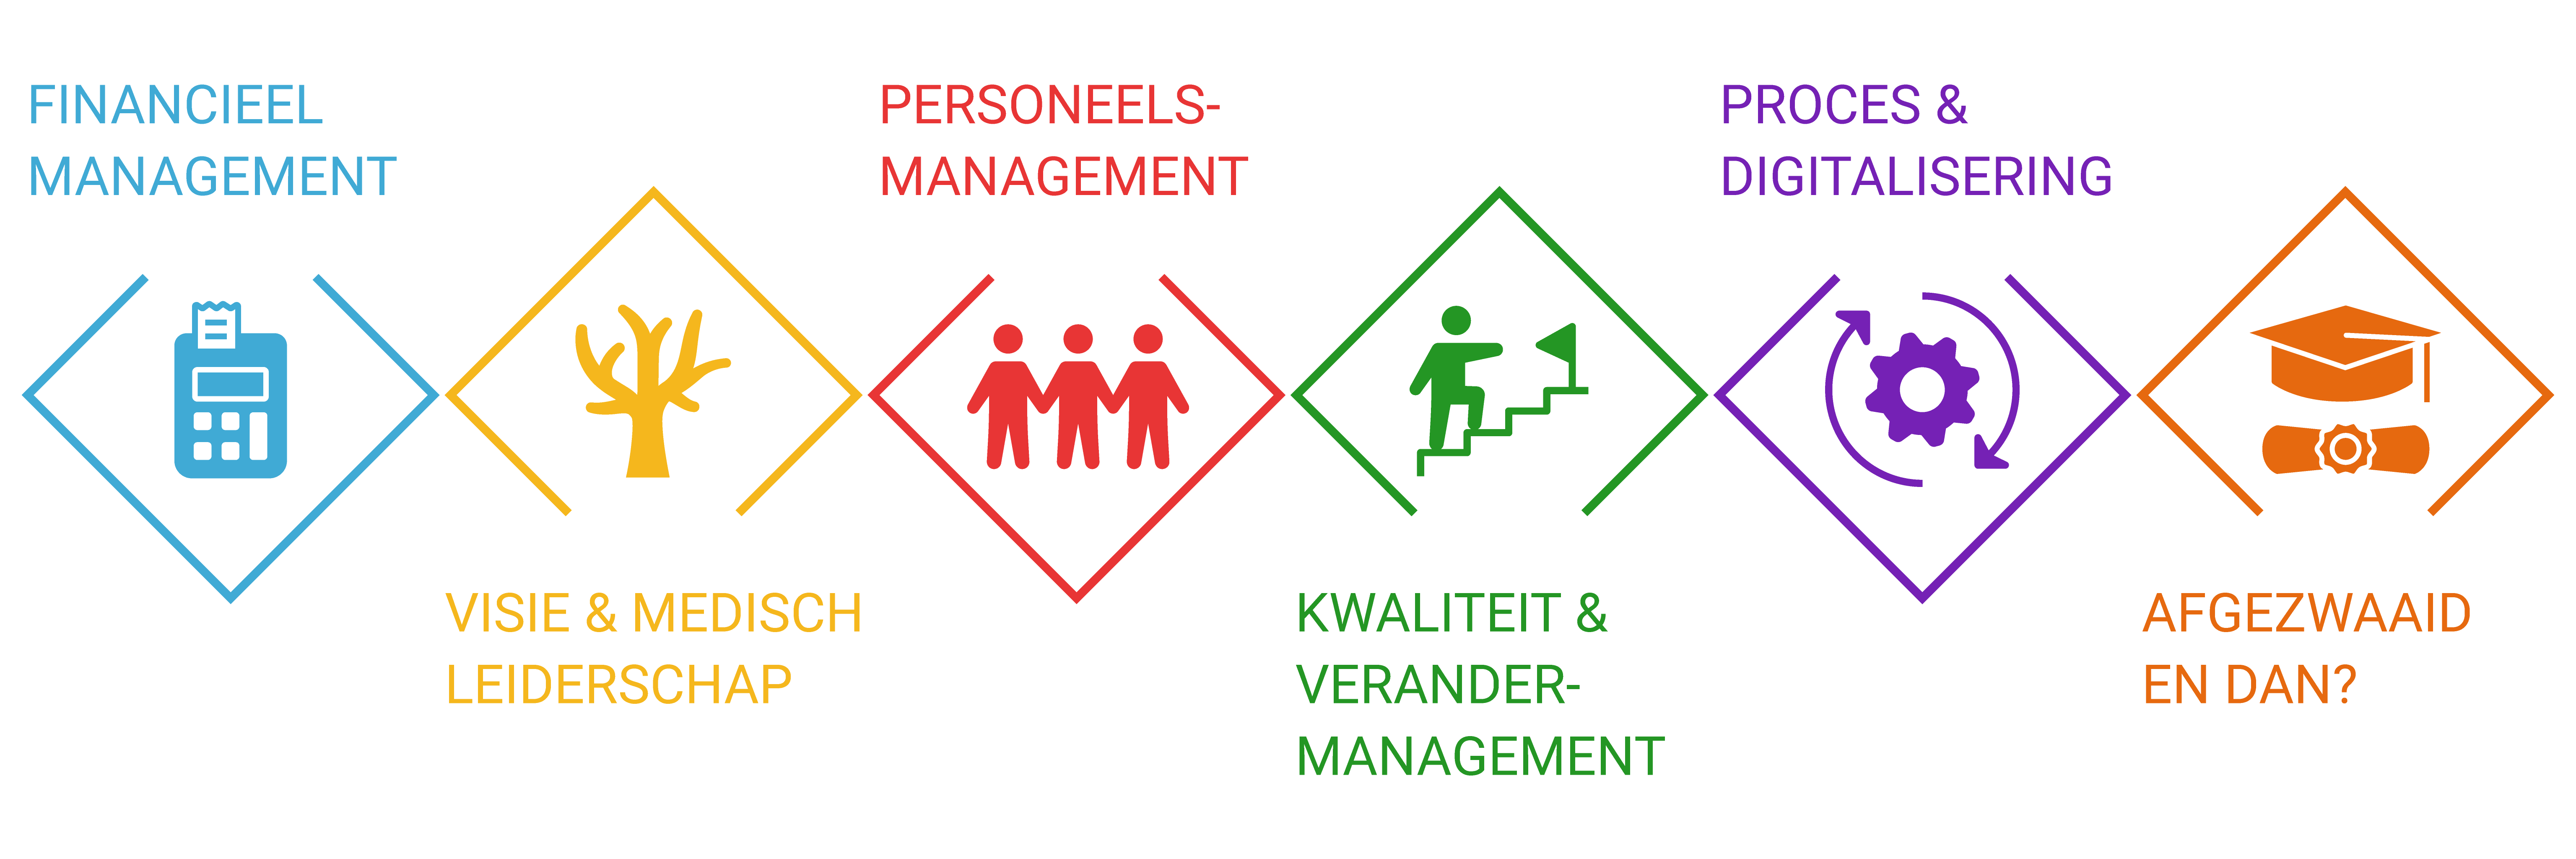 De 6 clusters van praktijkmanagementL financieel management, medisch leiderschap, personeelsmanagement, kwaliteit en verandermanagement, proces en digitalisering en afgezwaaid en dan